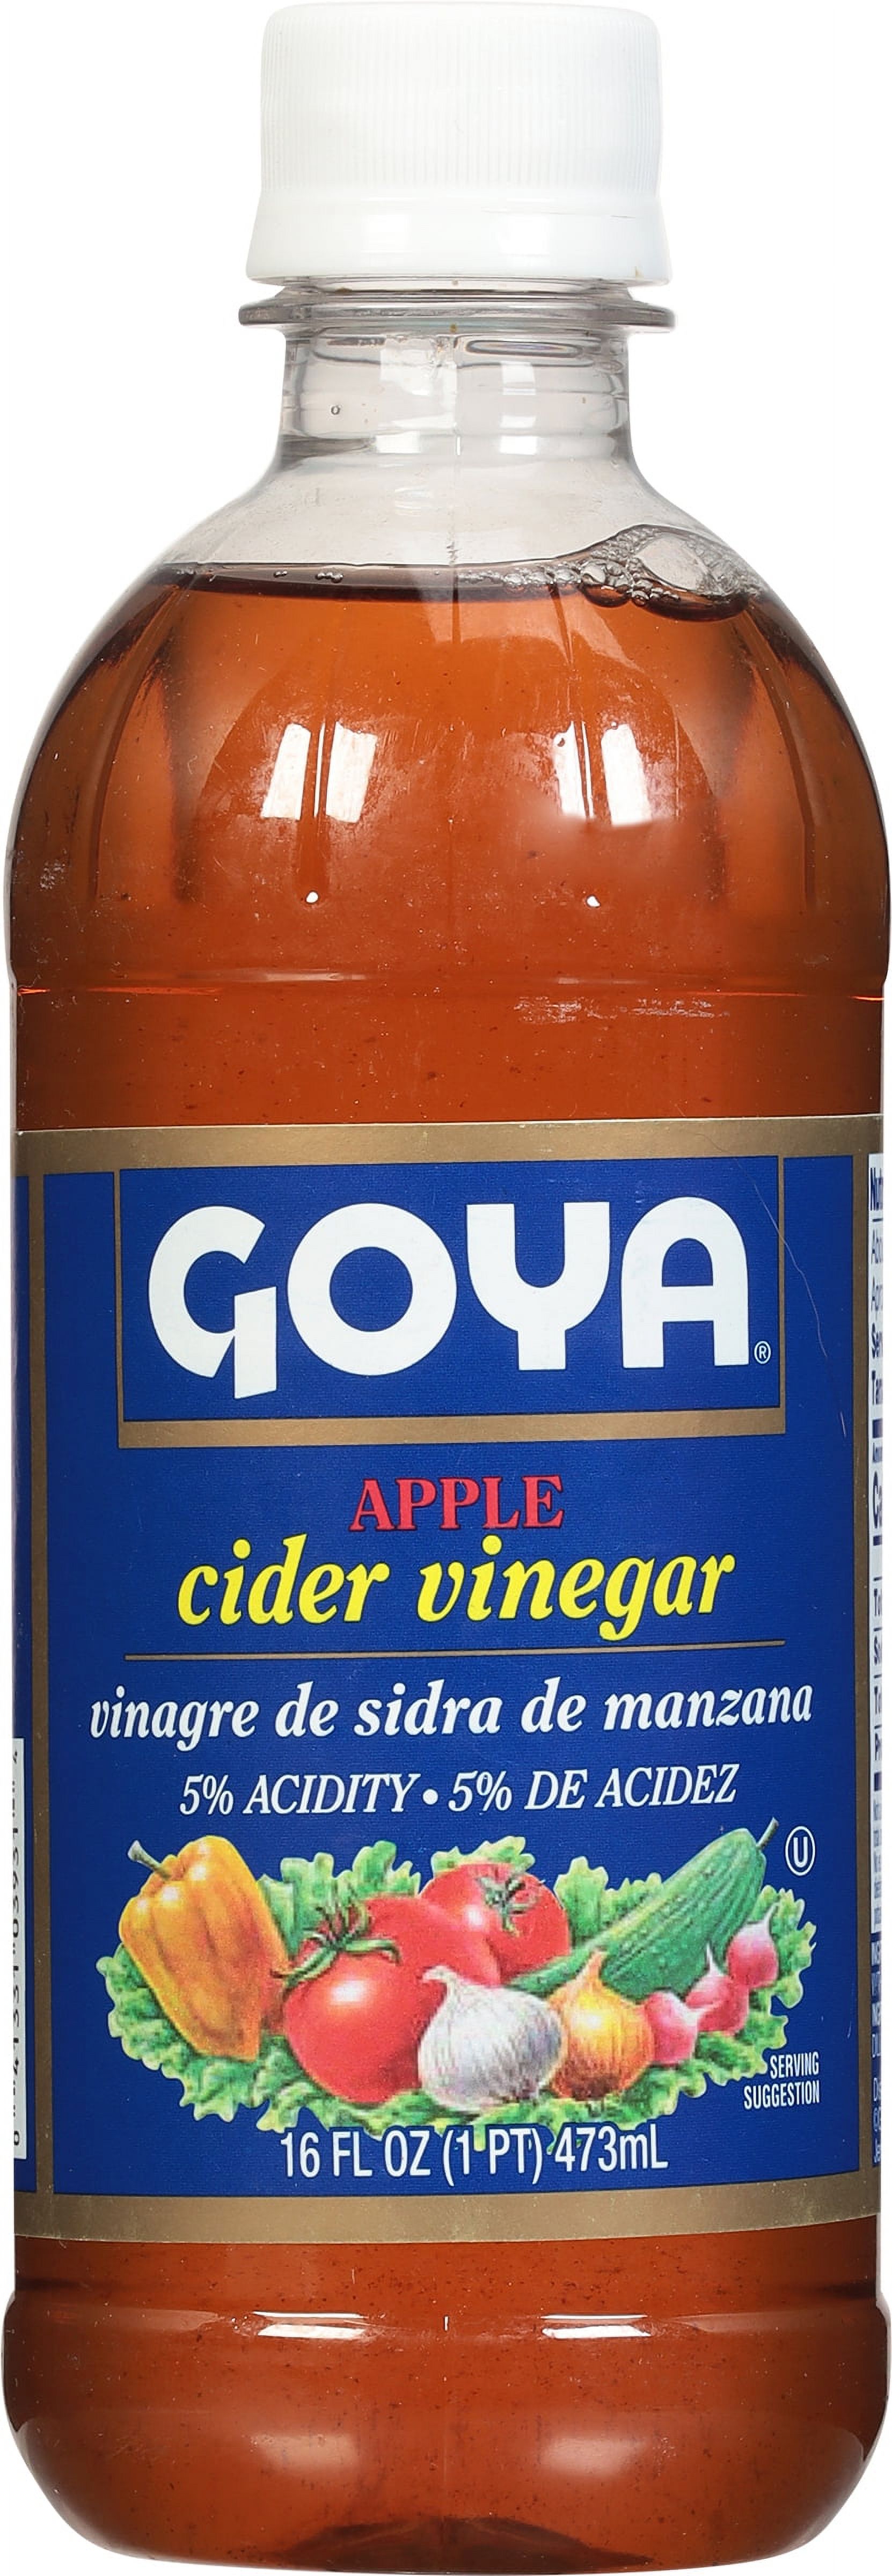 Goya Apple Cider Vinegar, 16 fl oz - image 3 of 4